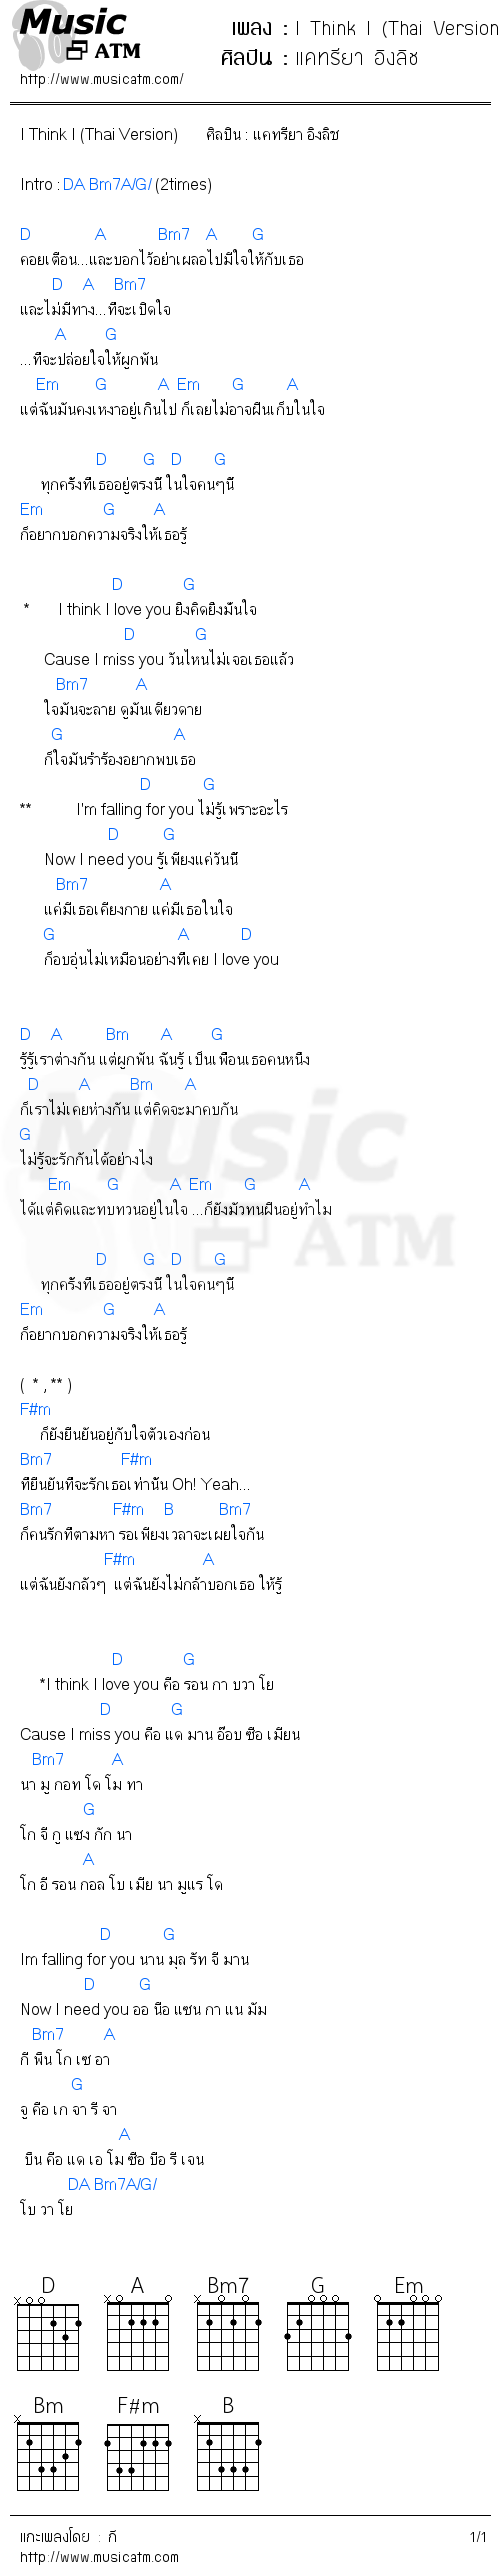 คอร์ดเพลง I Think I (Thai Version) - แคทรียา อิงลิช | คอร์ดเพลงใหม่